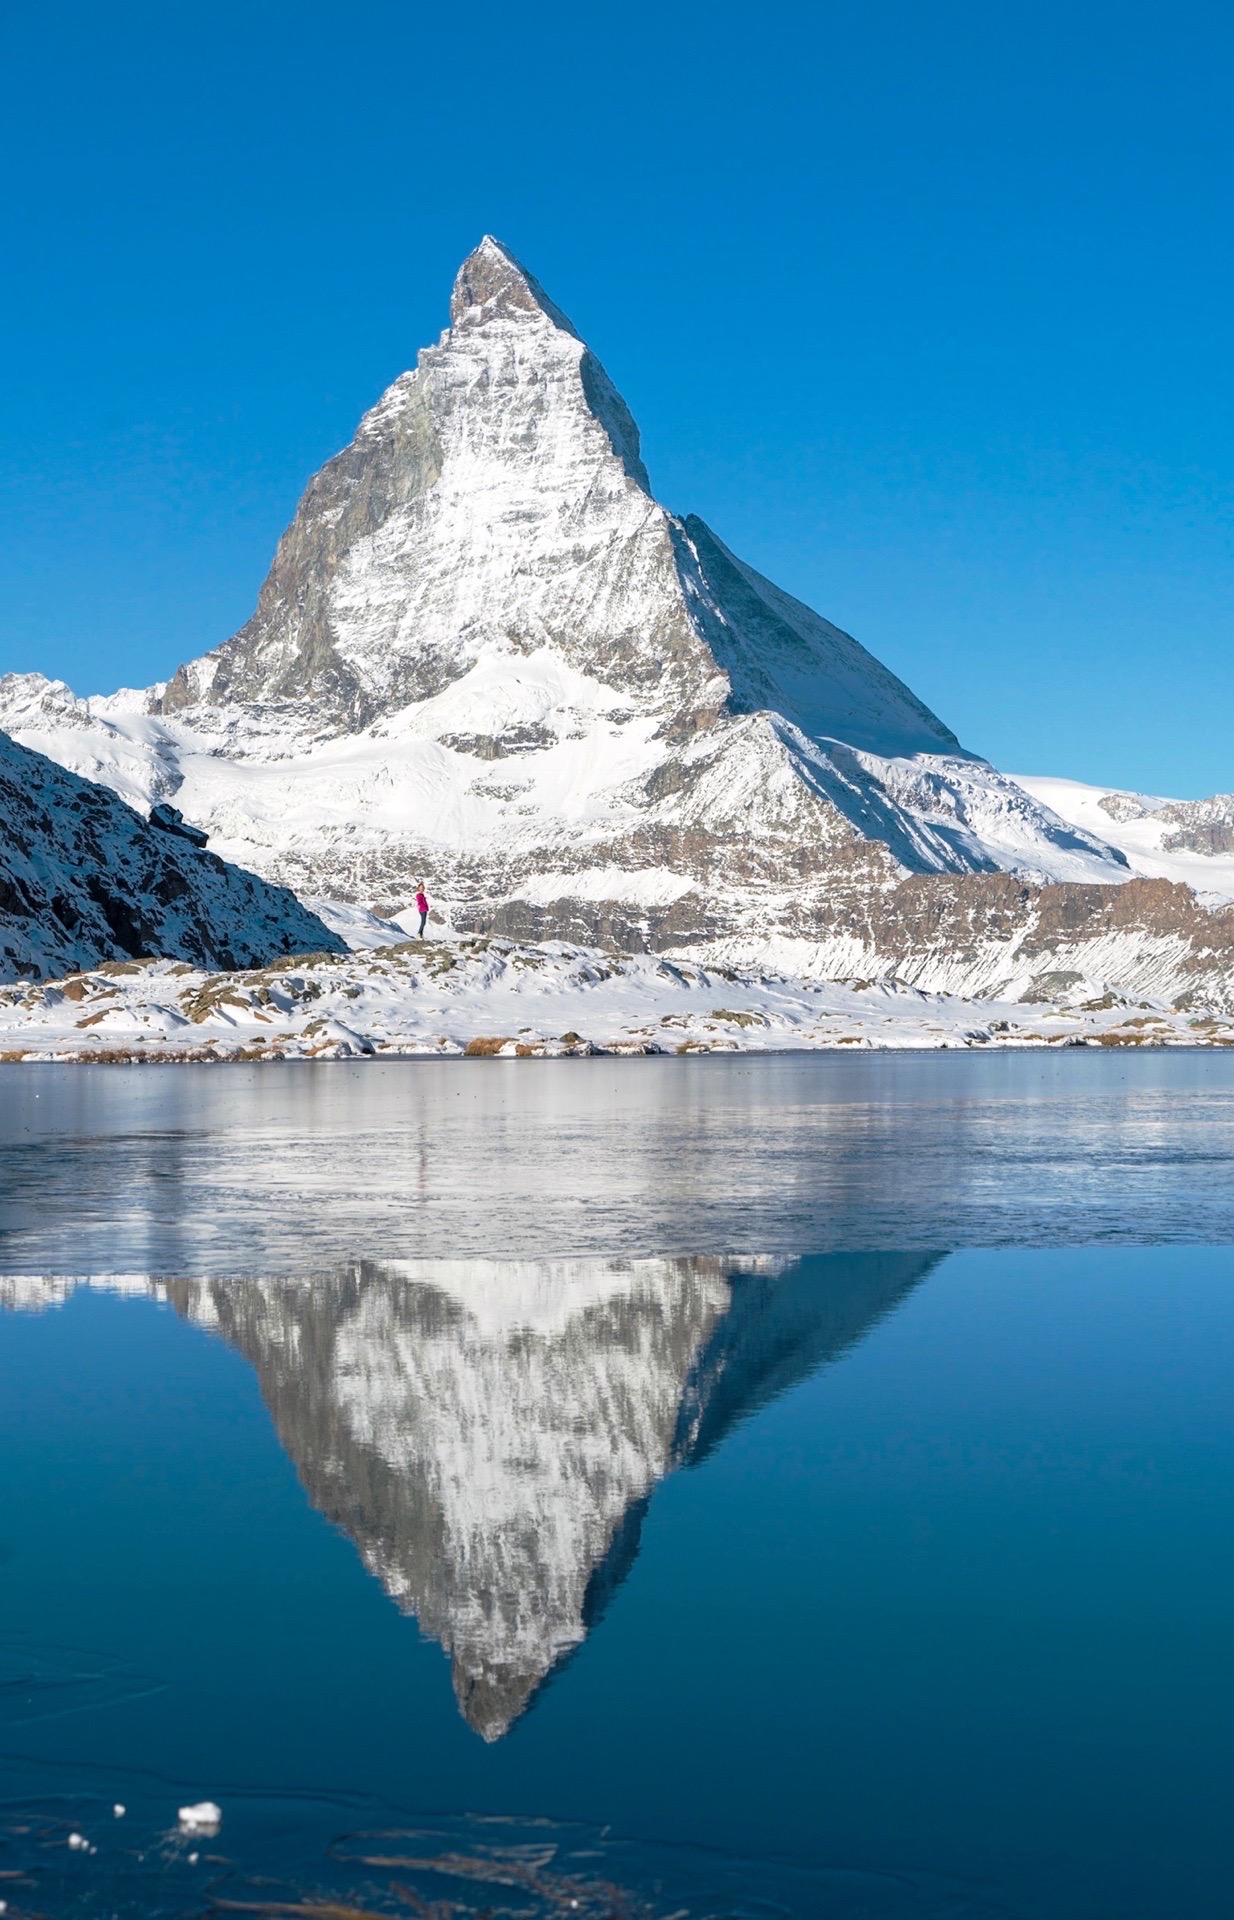 💙简介 承接上一篇，马特洪峰是我最爱的雪山也是瑞士引以为傲的象征。（在瑞士很多商品上都有马特洪峰的标